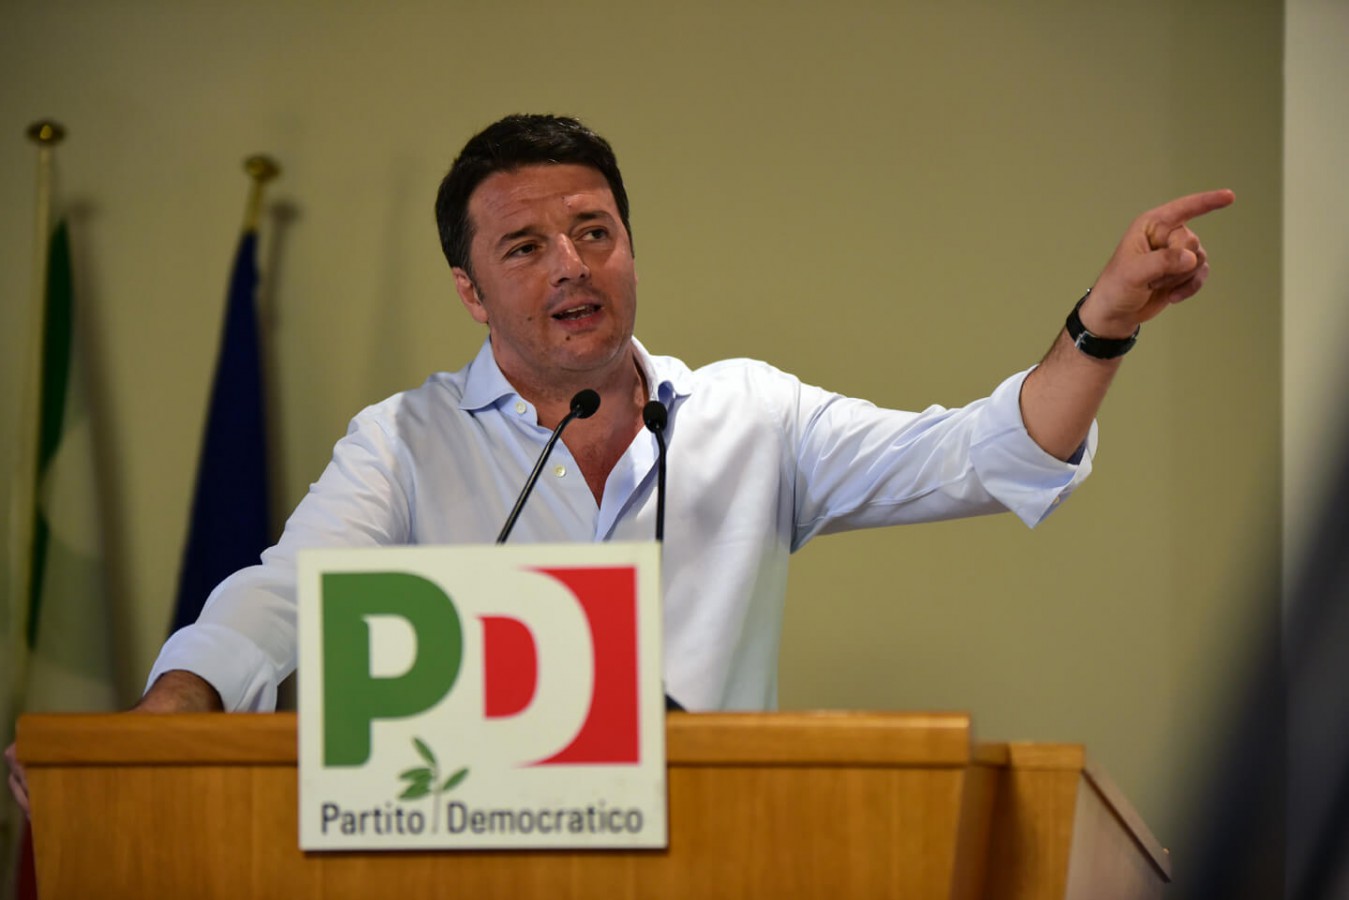 Al momento stai visualizzando L’intervento di apertura di Matteo Renzi alla Direzione Nazione PD del 4 aprile 2016